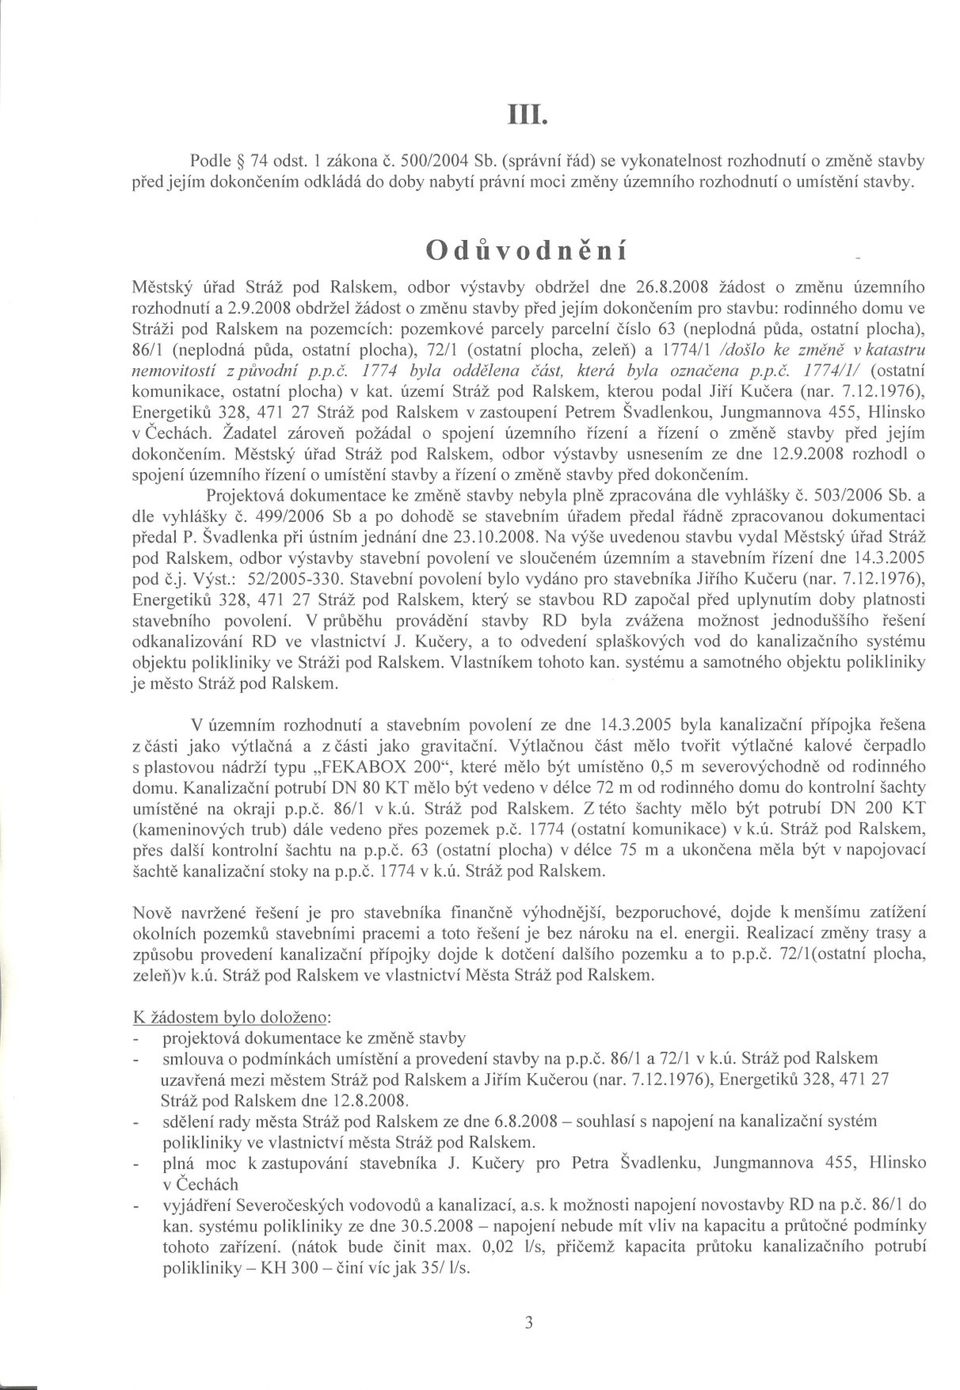 Oduvodnení Mestský úrad Stráž pod Ralskem, odbor výstavby obdržel dne 26.8.2008 žádost o zmenu územního rozhodnutí a 2.9.